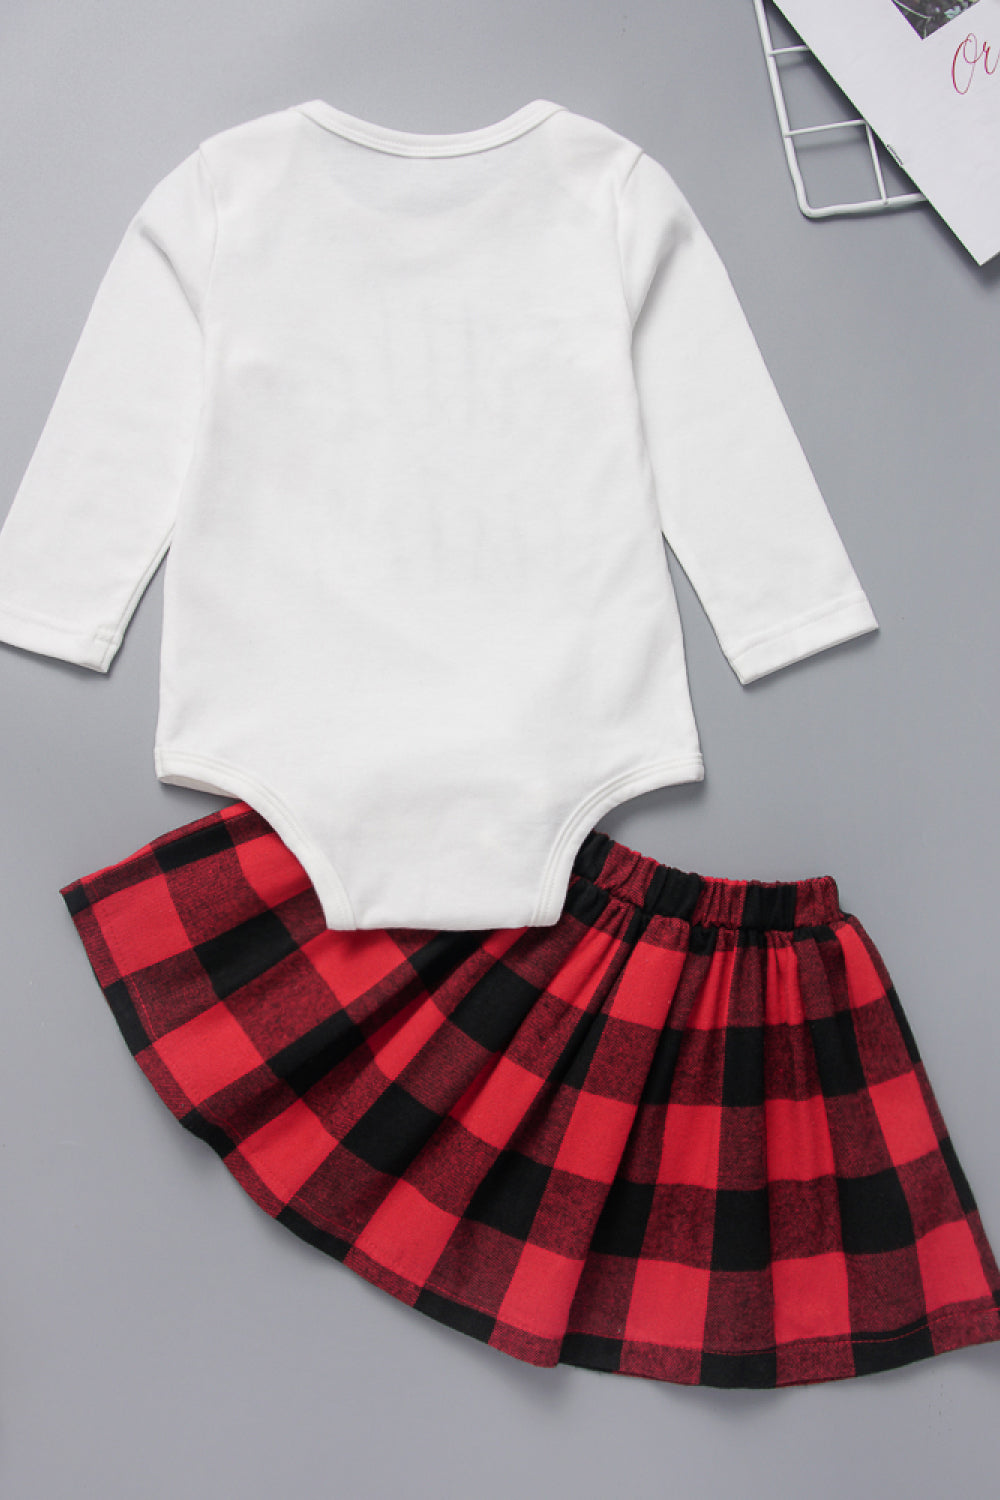 Baby Girls' Little Sister Bodysuit and Plaid Skirt Set - Edy's Treasures